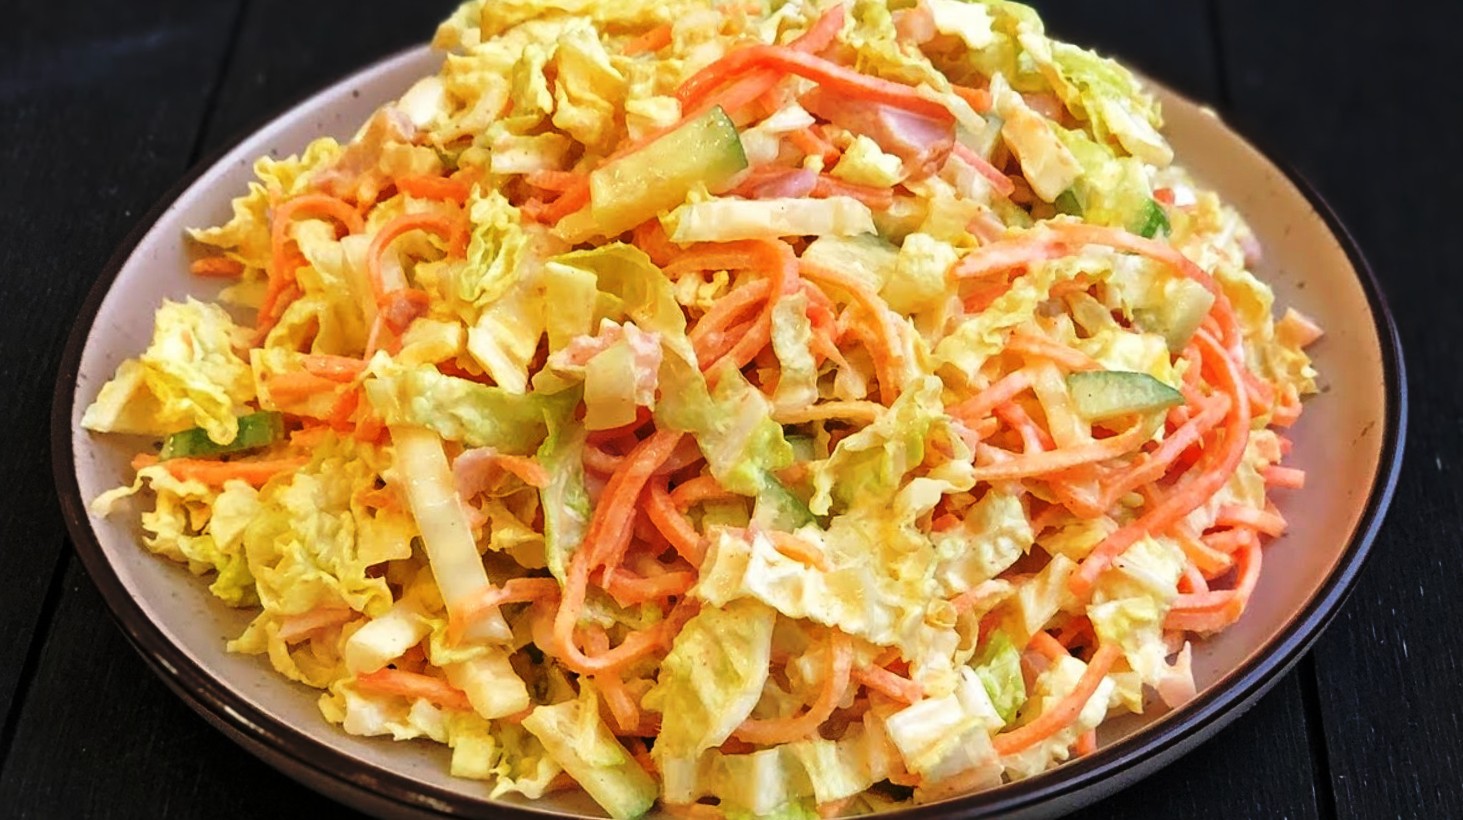 Рецепты вкусных салатов на скорую руку из доступных продуктов.